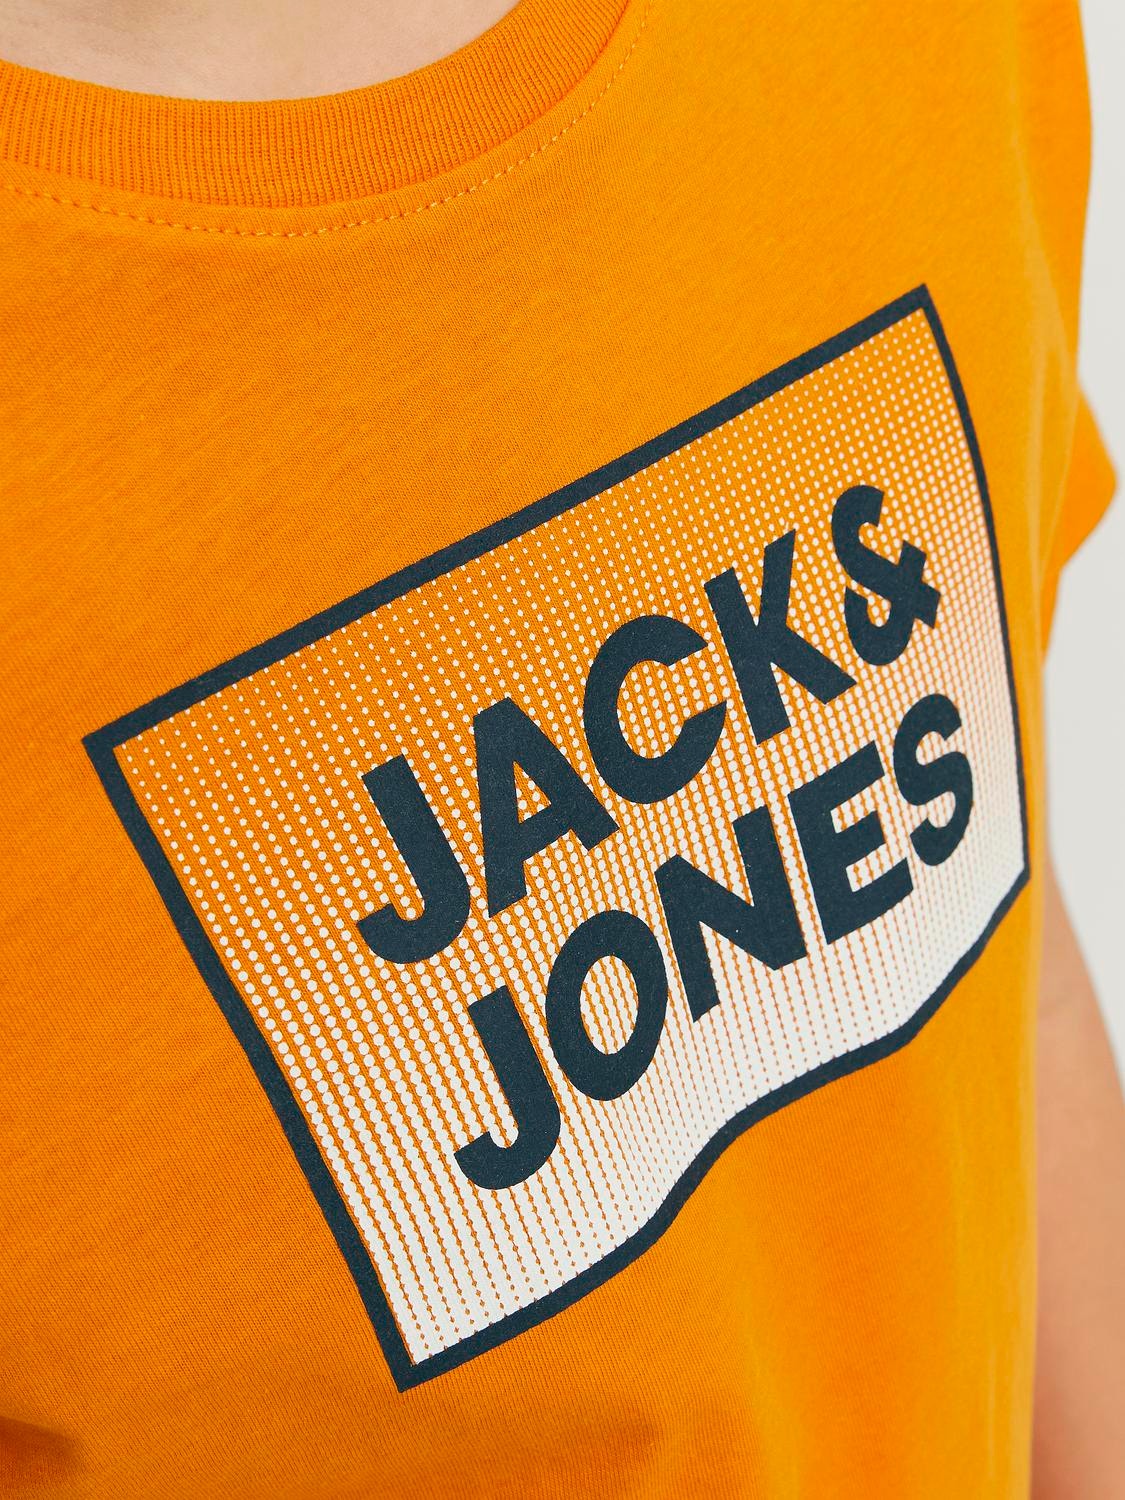 Jack & Jones Bedrukt T-shirt Voor jongens -Dark Cheddar - 12249633